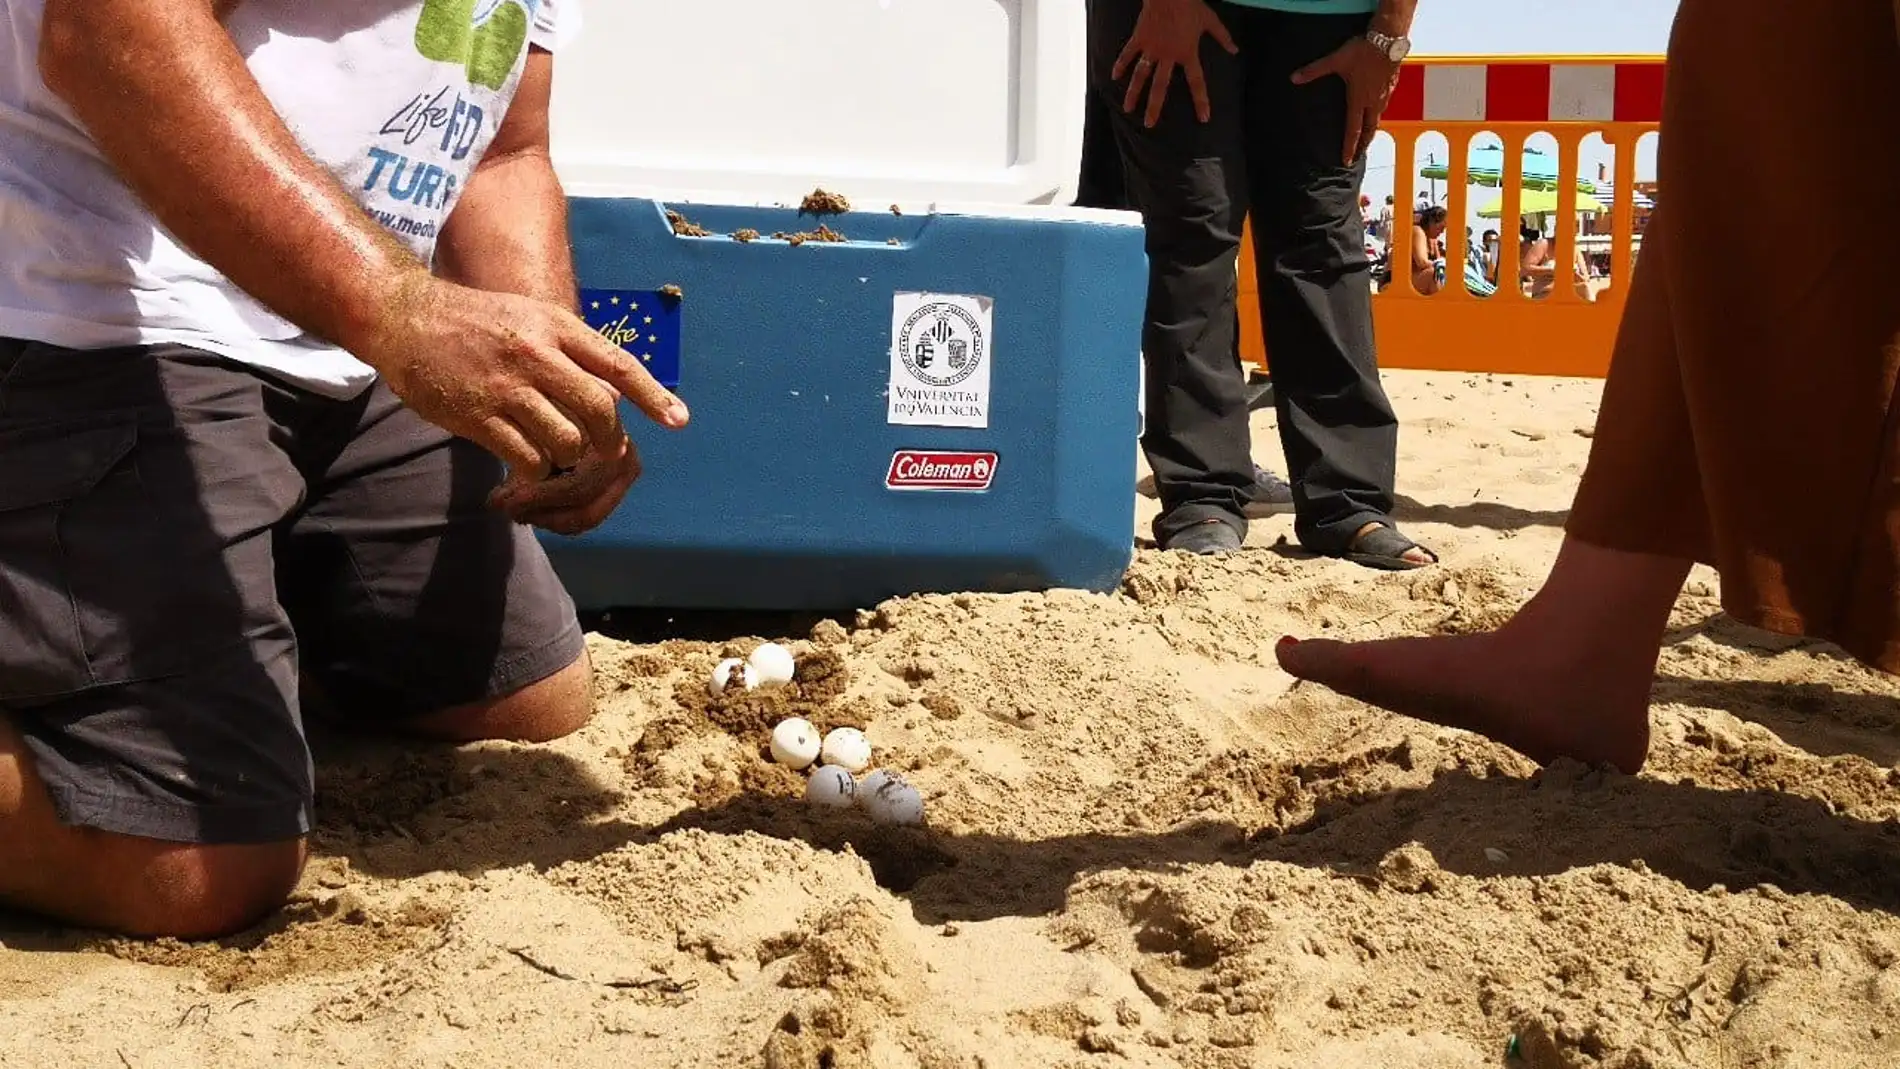 Voluntarios de Talaiola y Margalló-Ecologistas en Acción vigilarán el nido de tortuga boba de la playa del Carabassí de Elche.